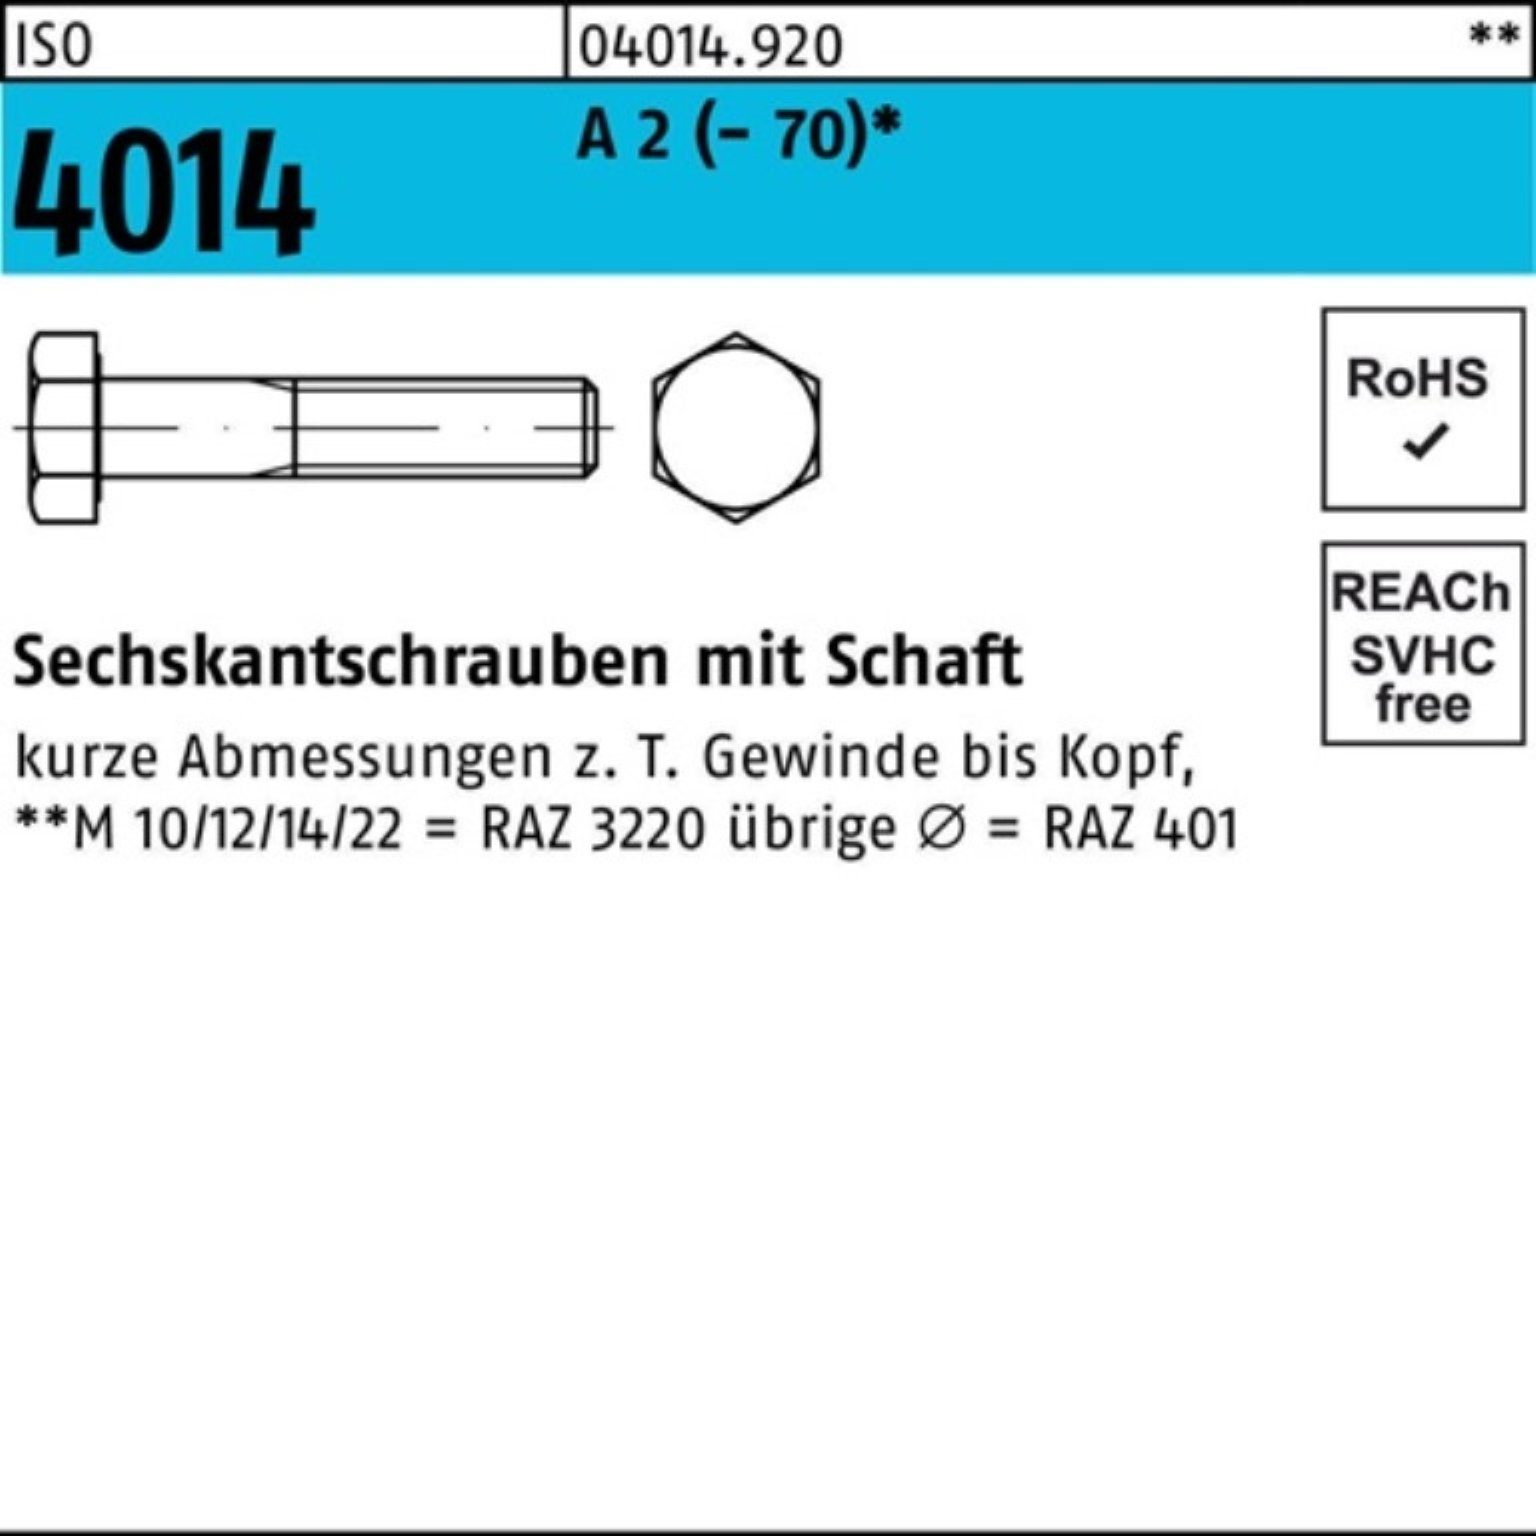 Bufab Sechskantschraube 100er Pack Sechskantschraube ISO 4014 Schaft M8x 180 A 2 (70) 25 St